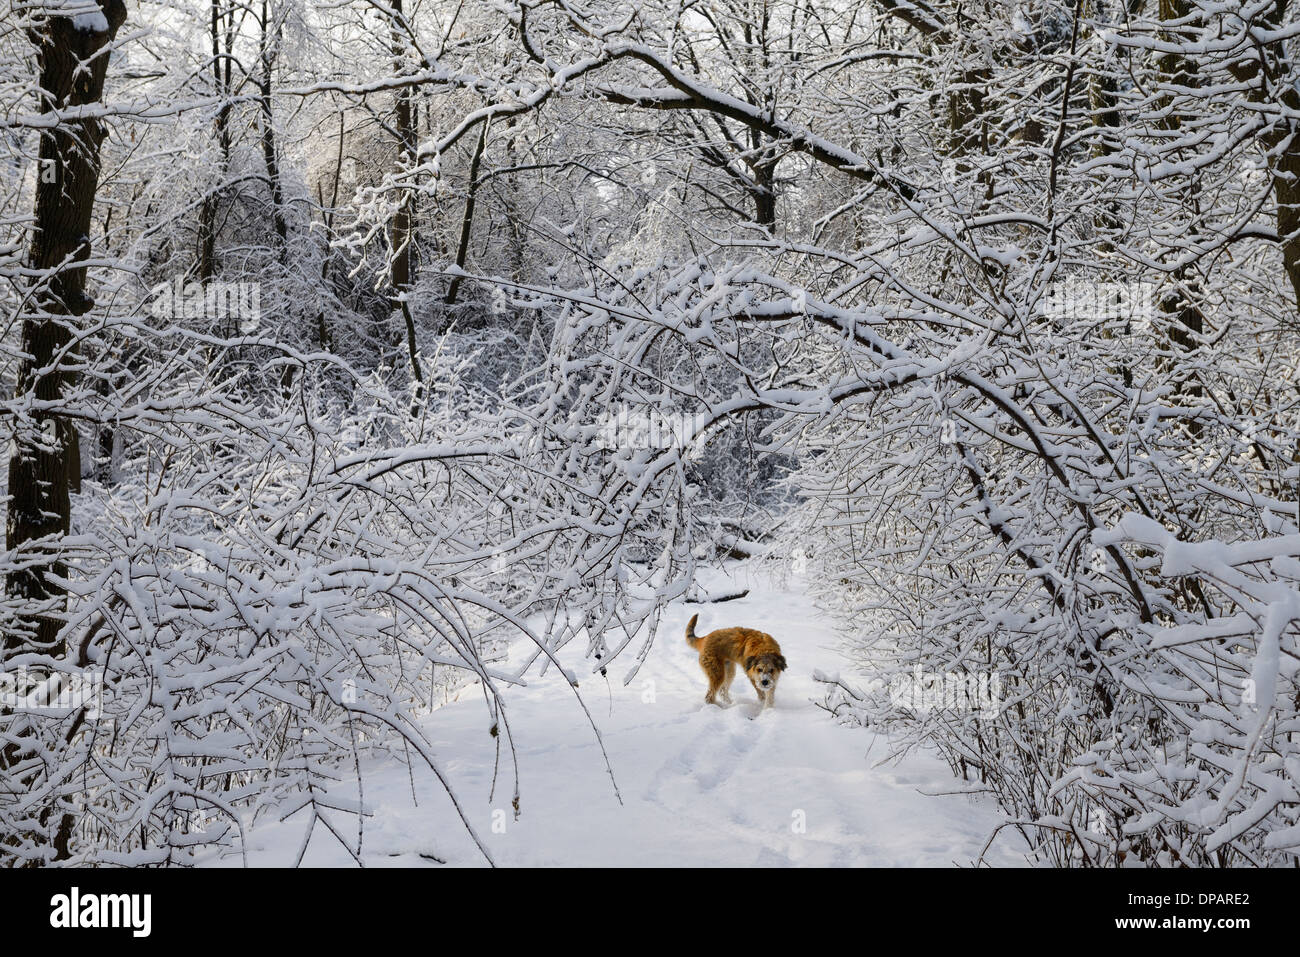 Sans laisse shaggy dog pet sur la forêt enneigée avec chemin d'arbres courbés recouvert de glace et neige après verglas à Toronto Banque D'Images